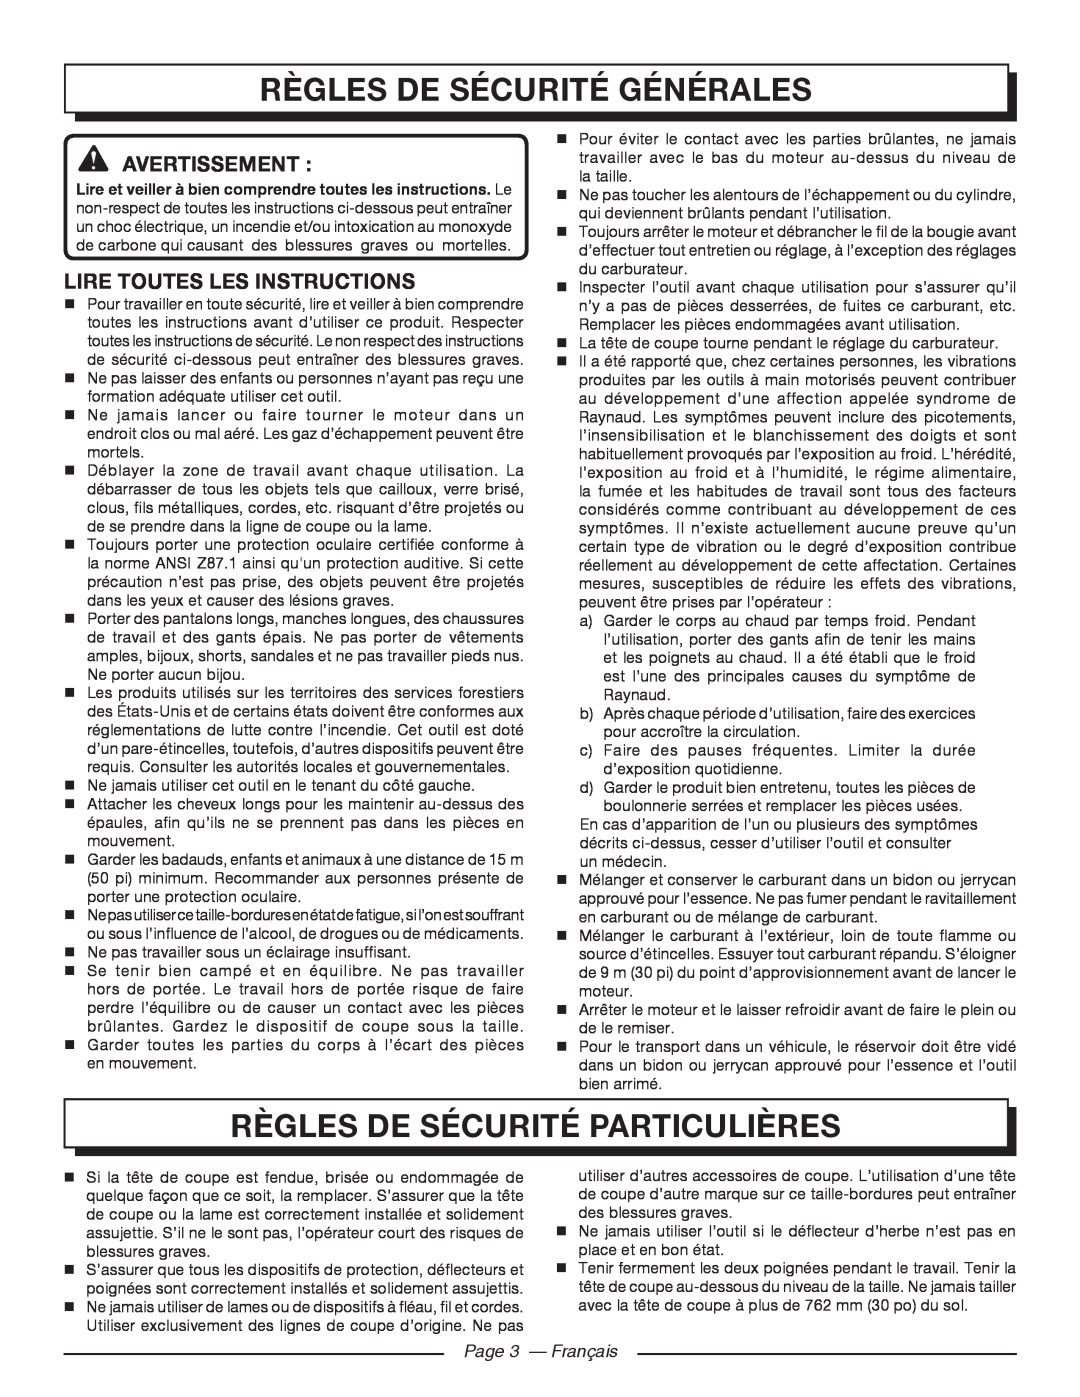 Homelite UT21006 Règles De Sécurité Générales, Règles De Sécurité Particulières, Avertissement , Page 3 - Français 